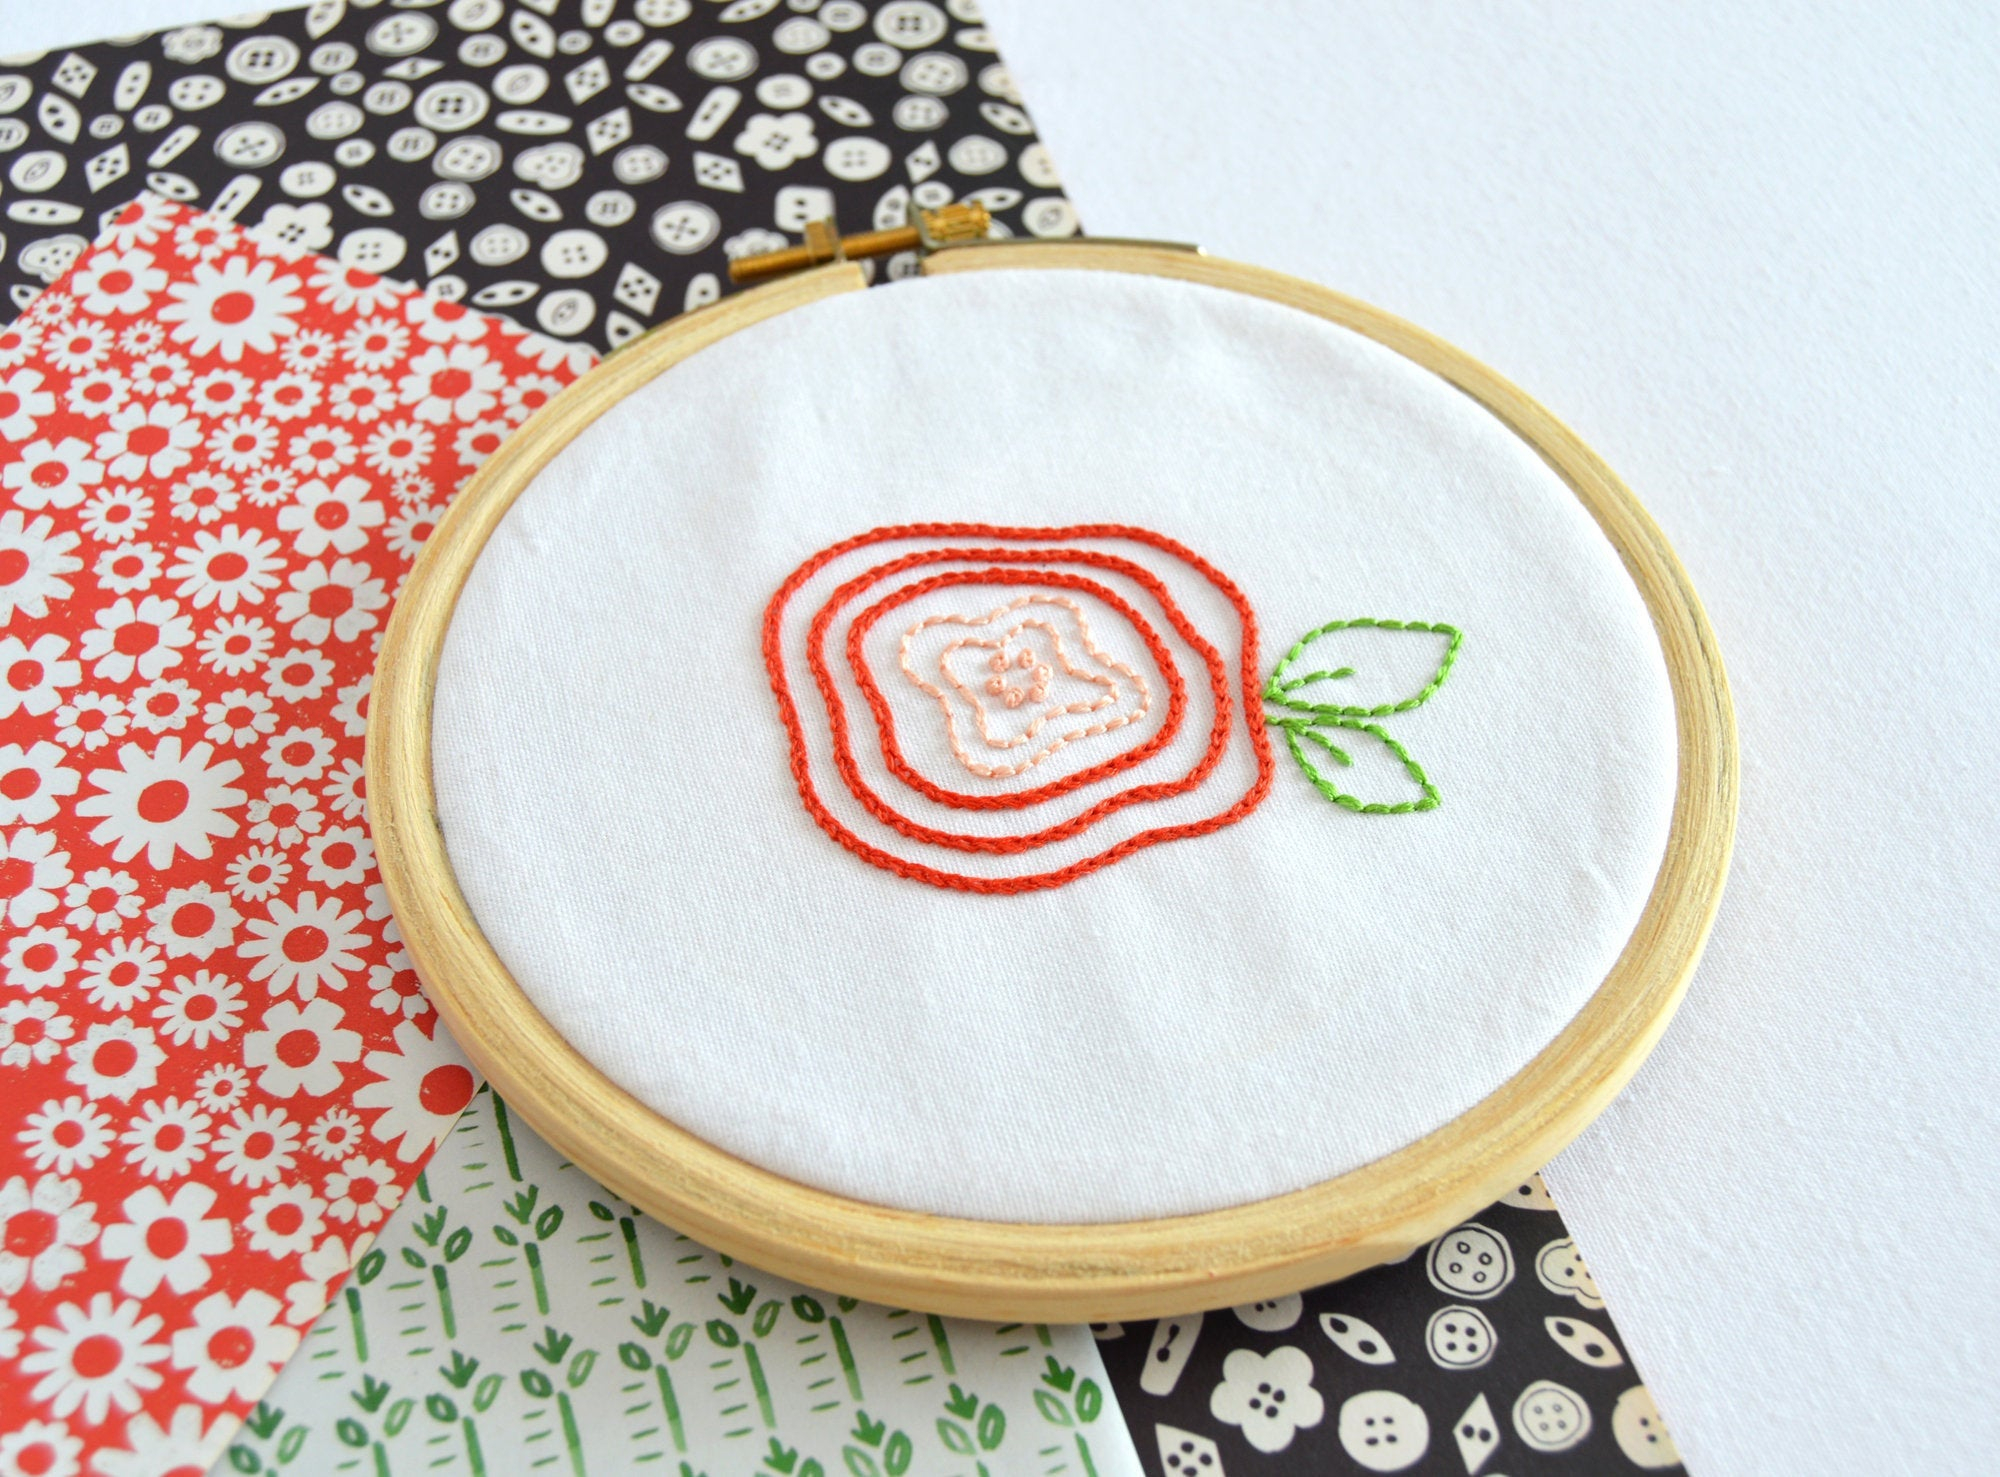 Embroidery Sampler Patterns Bloom Sampler Hand Embroidery Pattern An Embroidery Sampler Pdf Pattern